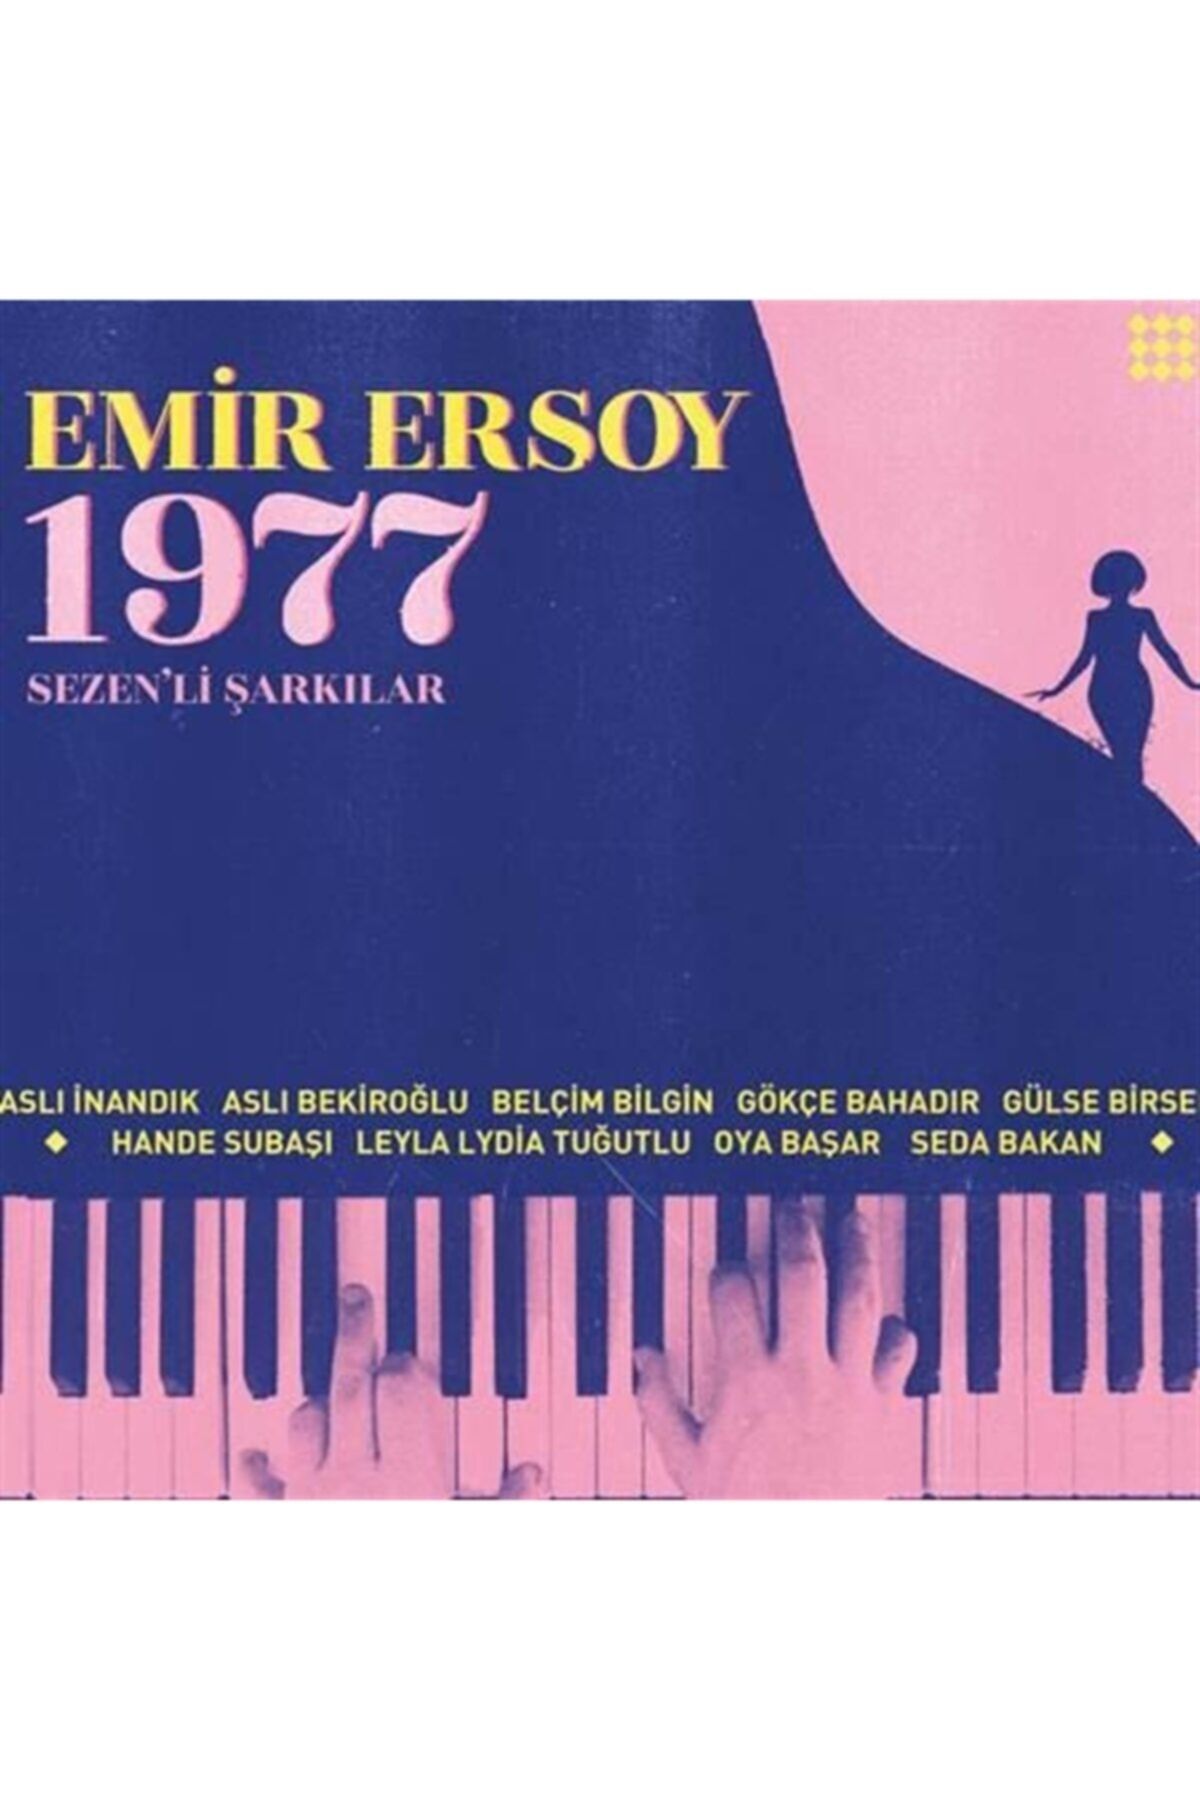 Sony Müzik Emir Ersoy-1977 Sezen'li Şarkılar (PLAK)